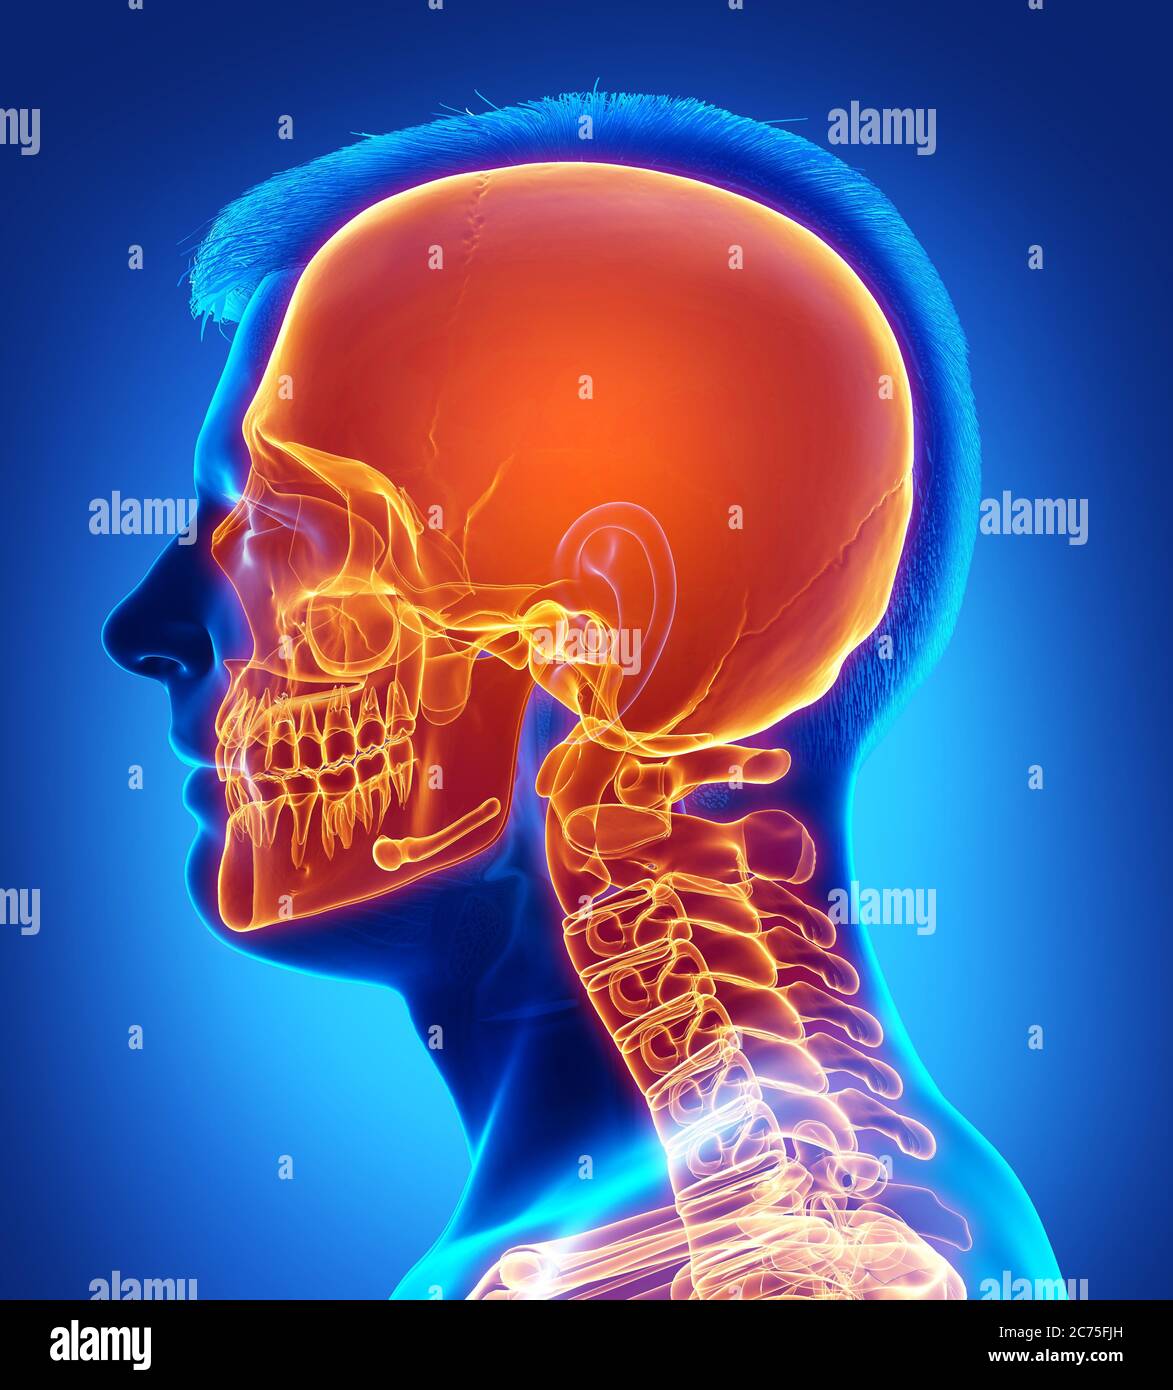 crâne mis en évidence par une illustration médicale précise et rendue en 3d Banque D'Images